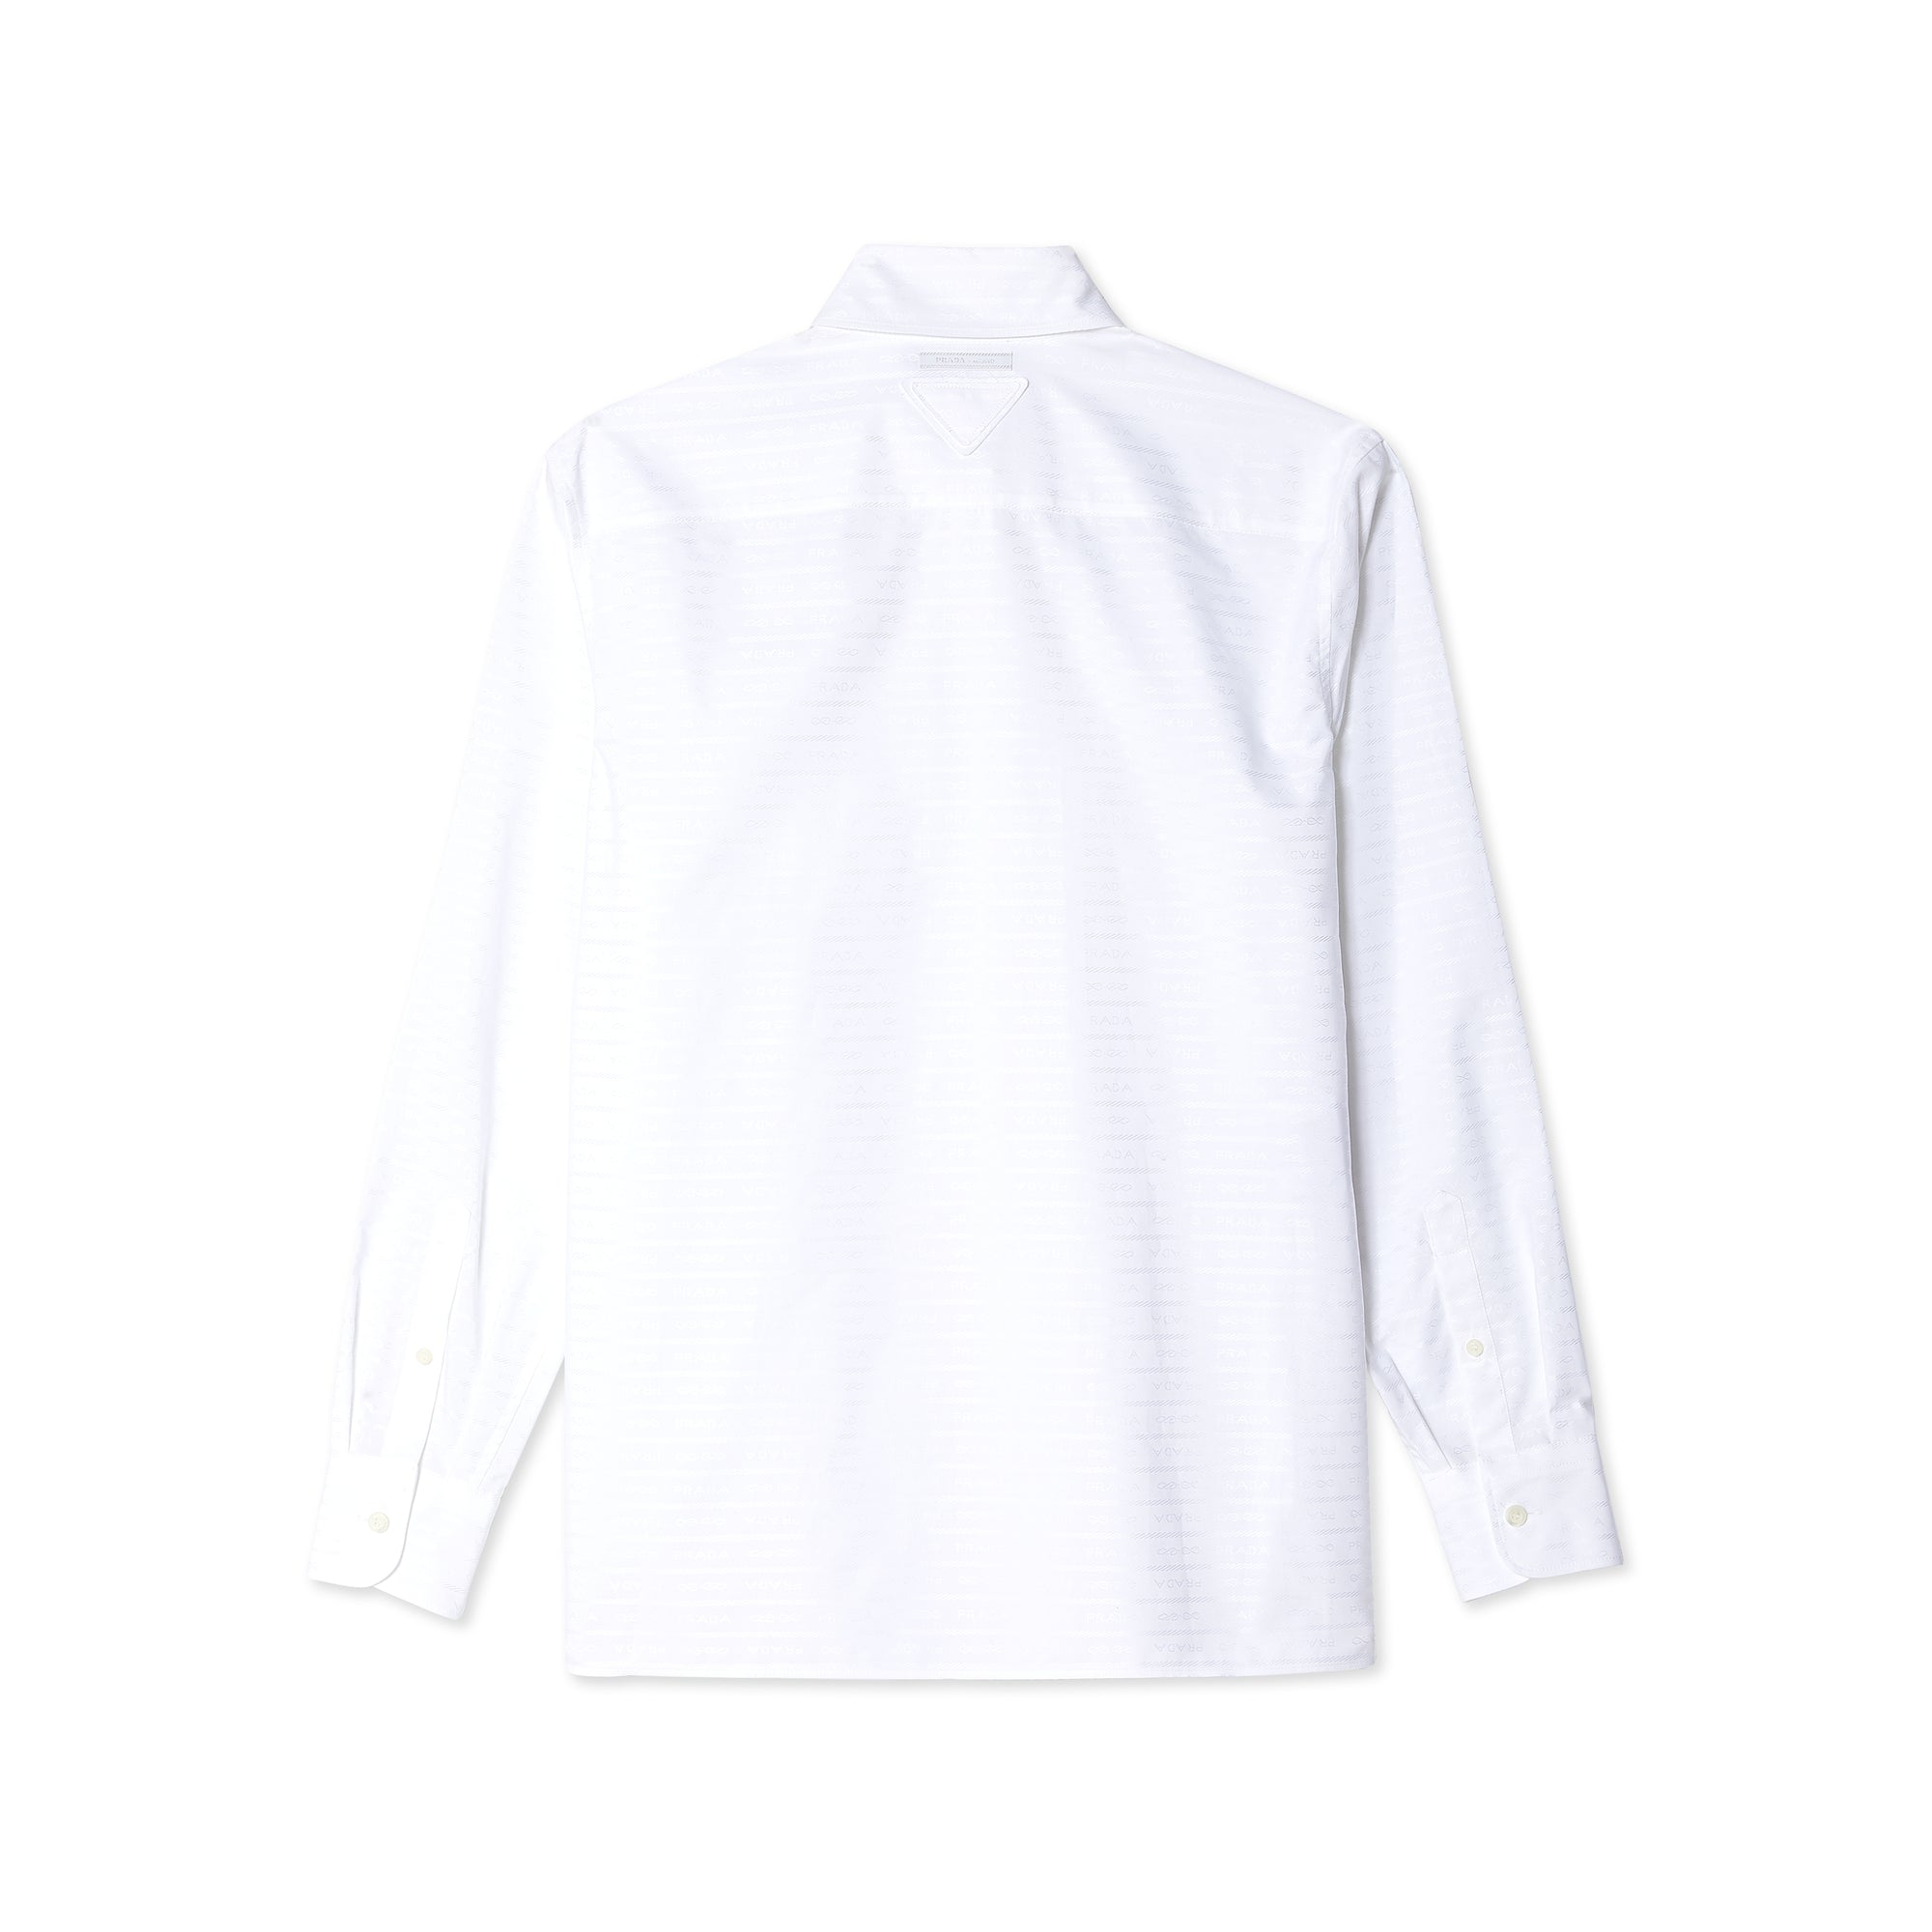 Prada - Women's Shirt - (White) view 2